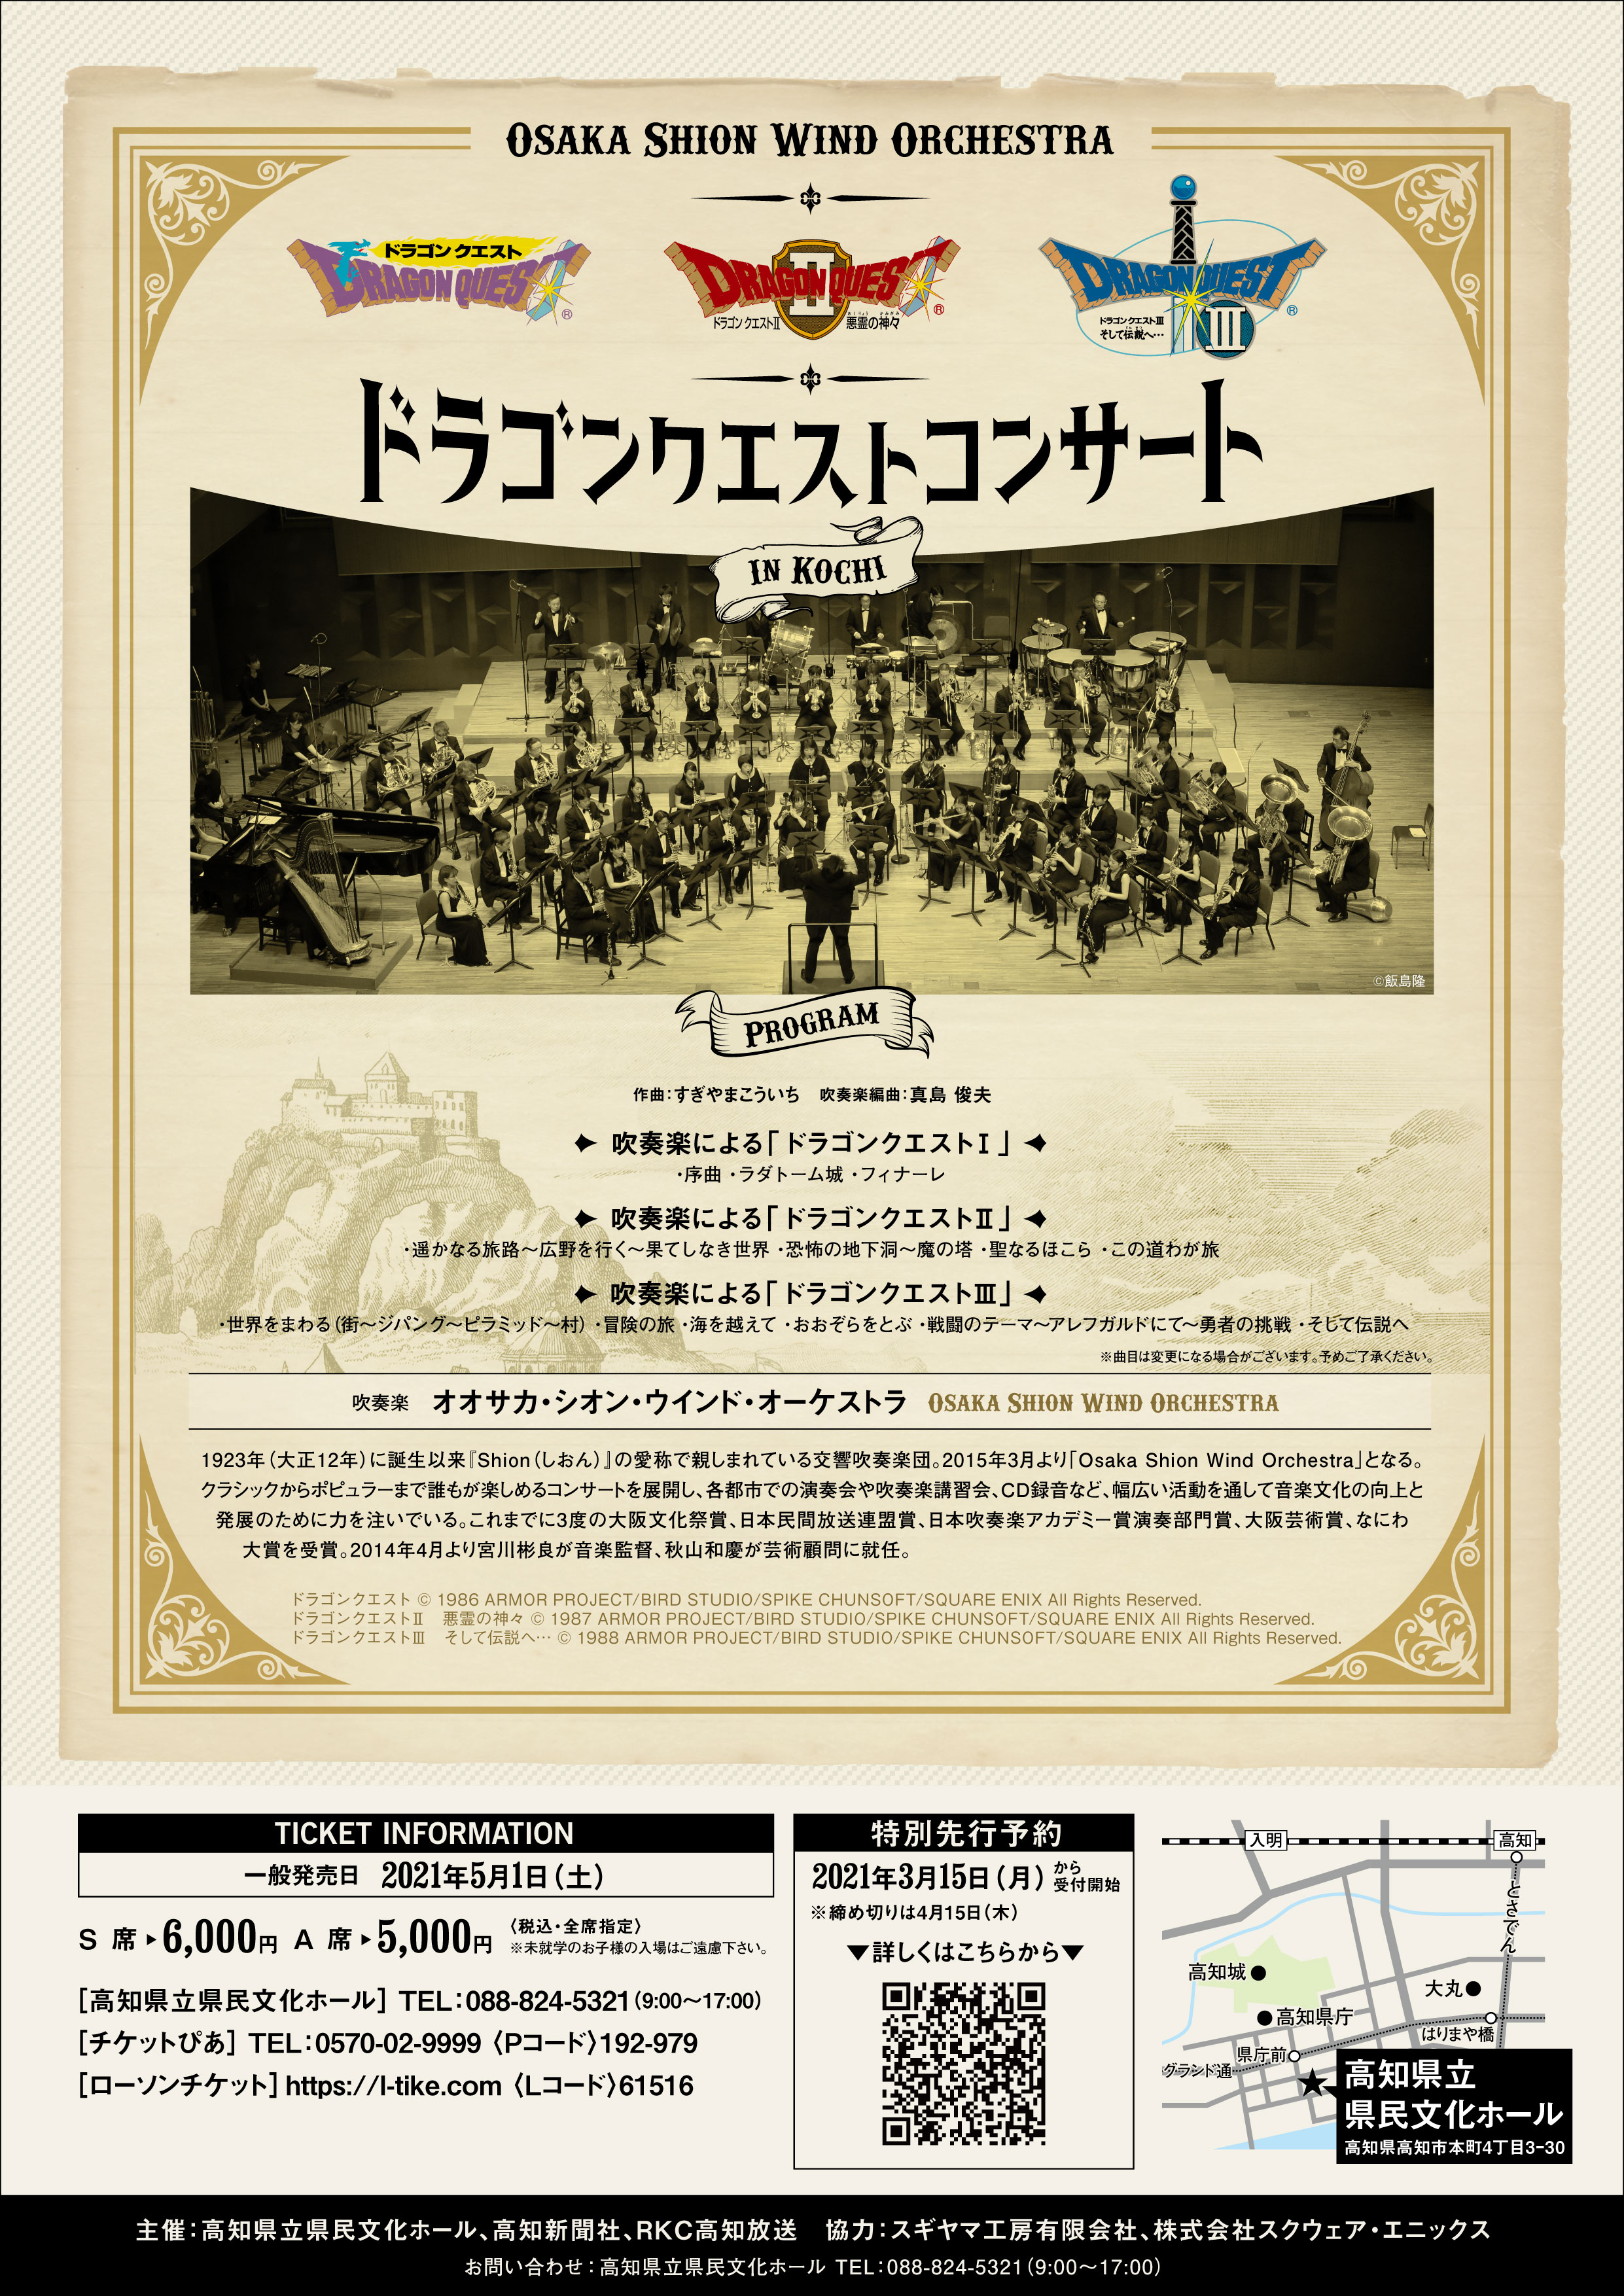 ドラゴンクエストコンサート In 高知 コンサート情報 Osaka Shion Wind Orchestra 大阪市音楽団